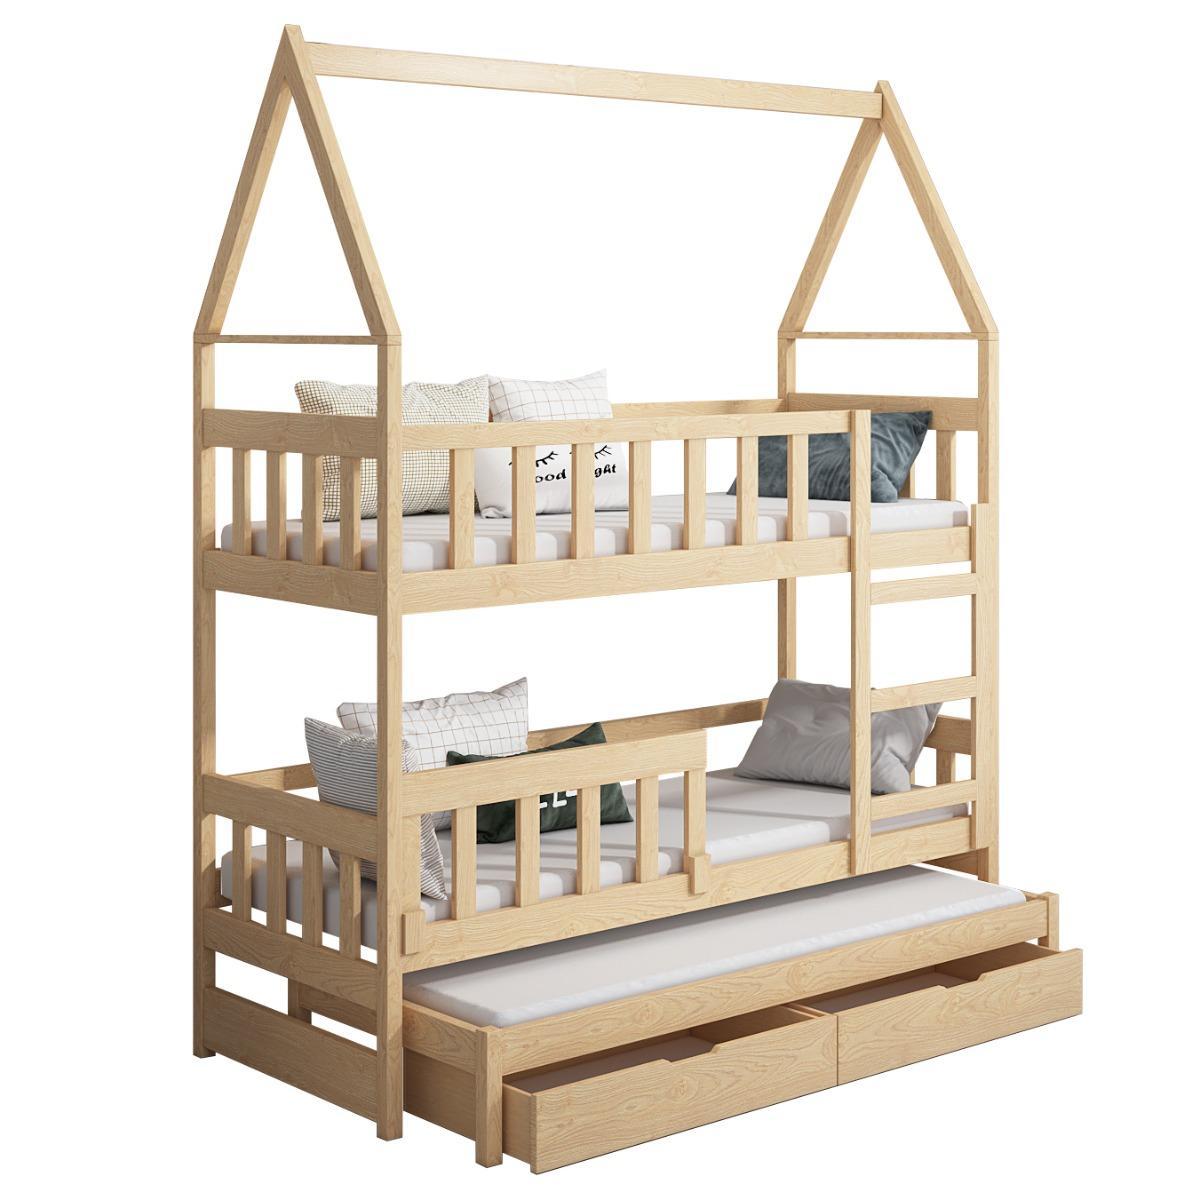 Łóżko piętrowe DOMEK drewno szare miejsce do spania dla 3 osób + materace lateksowe 180x75 cm + barierka dolna do pokoju dziecka 5 Full Screen